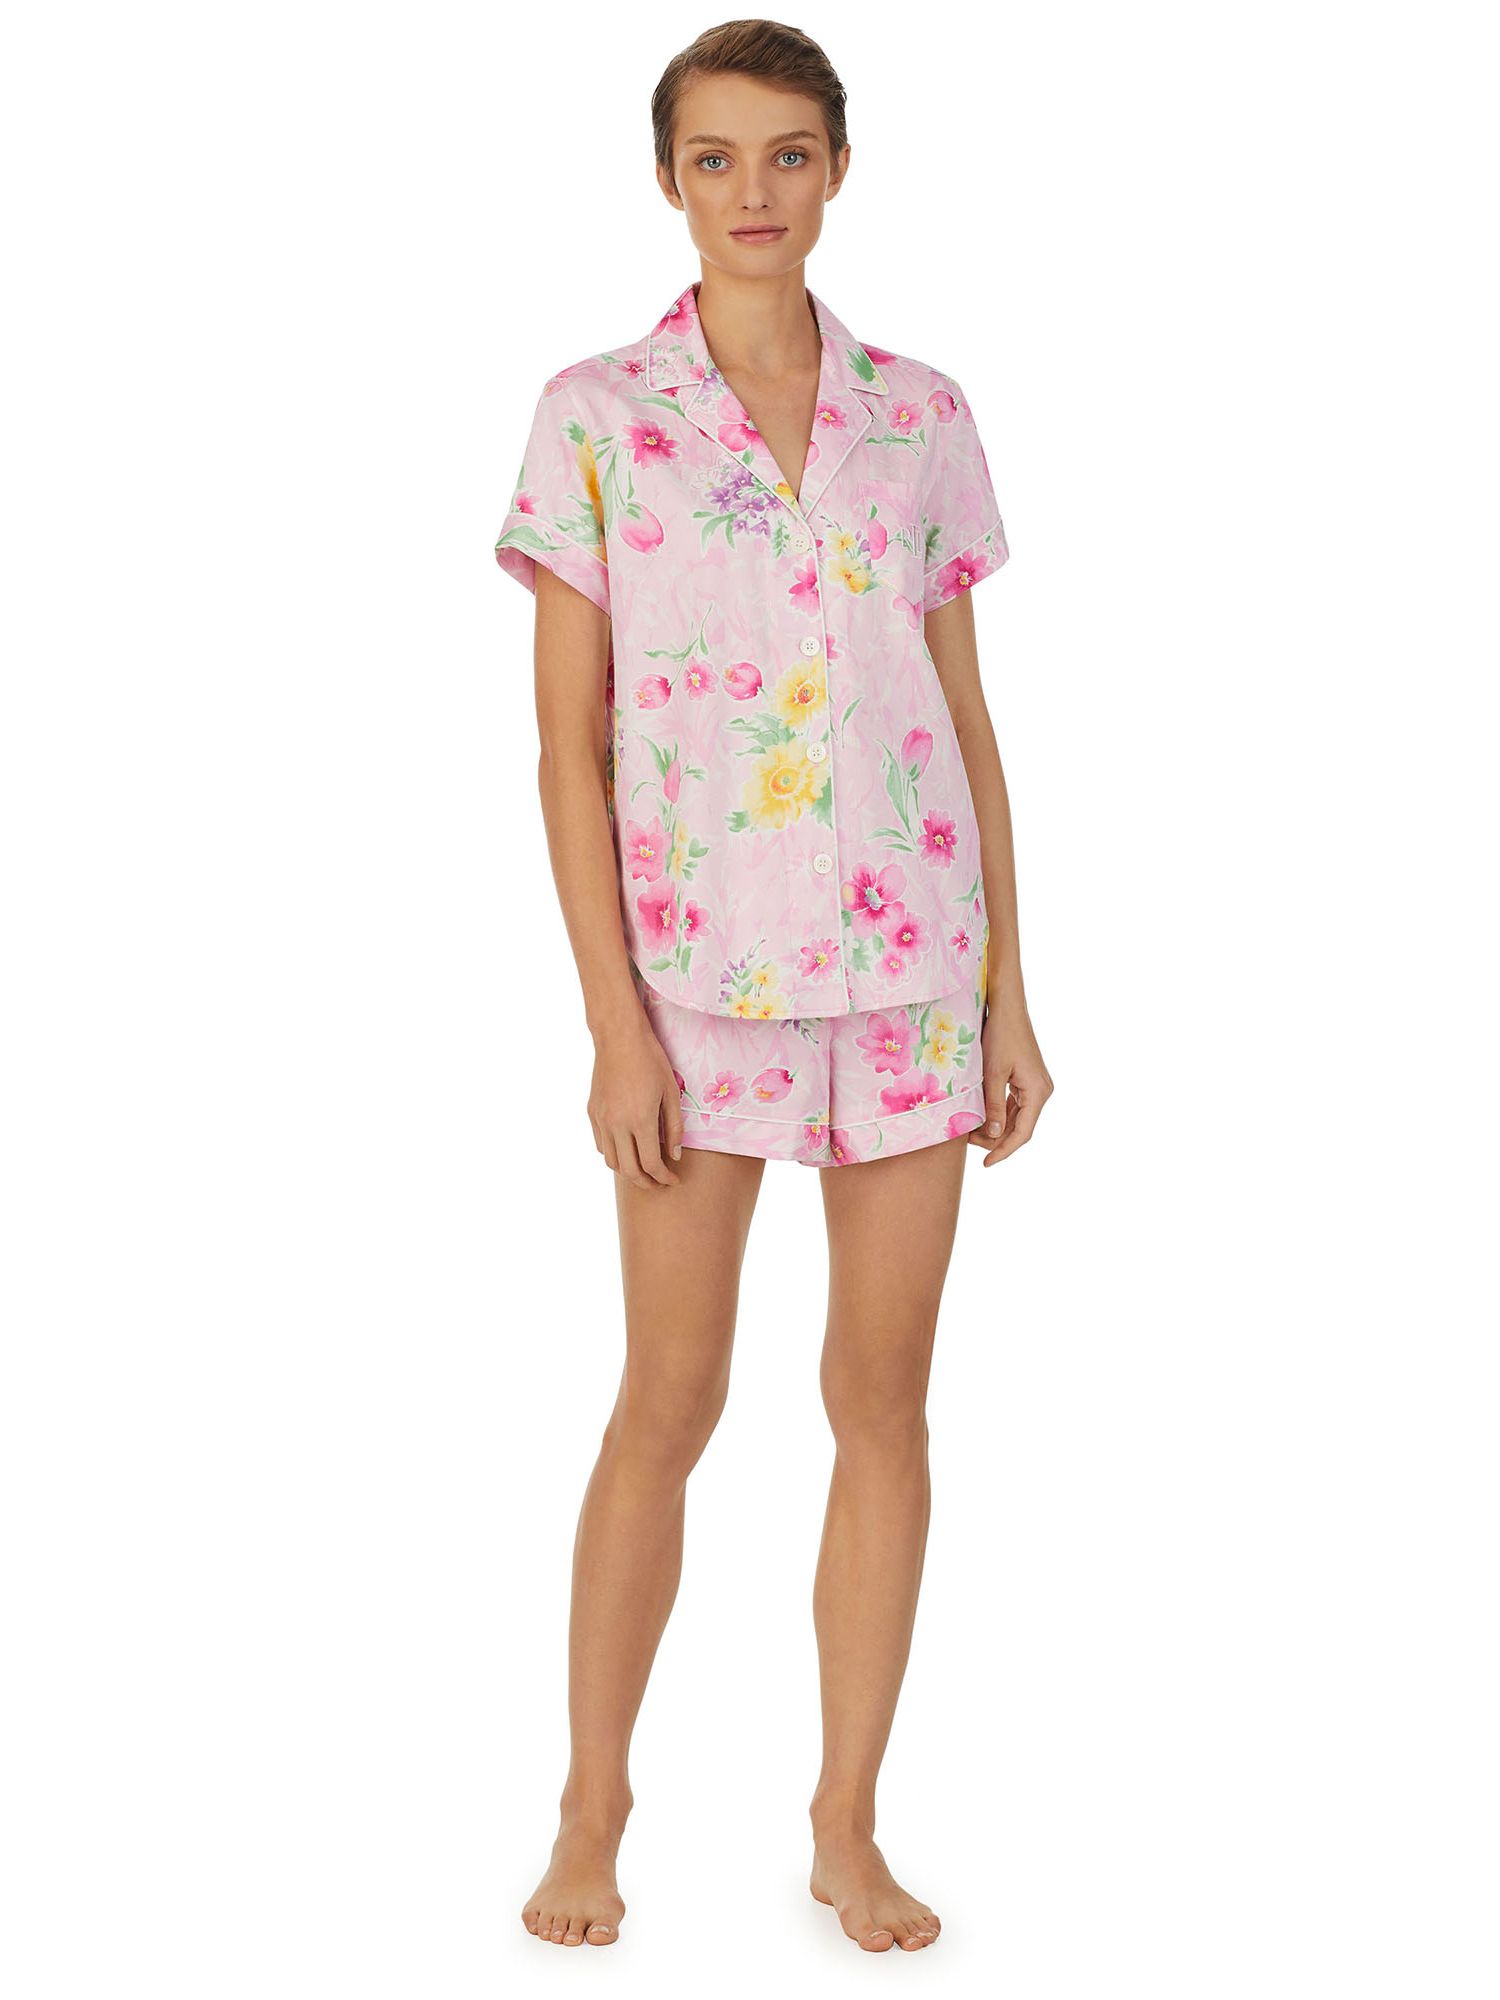 Lauren Ralph Lauren Floral Shorts Pyjamas, Pink/Multi